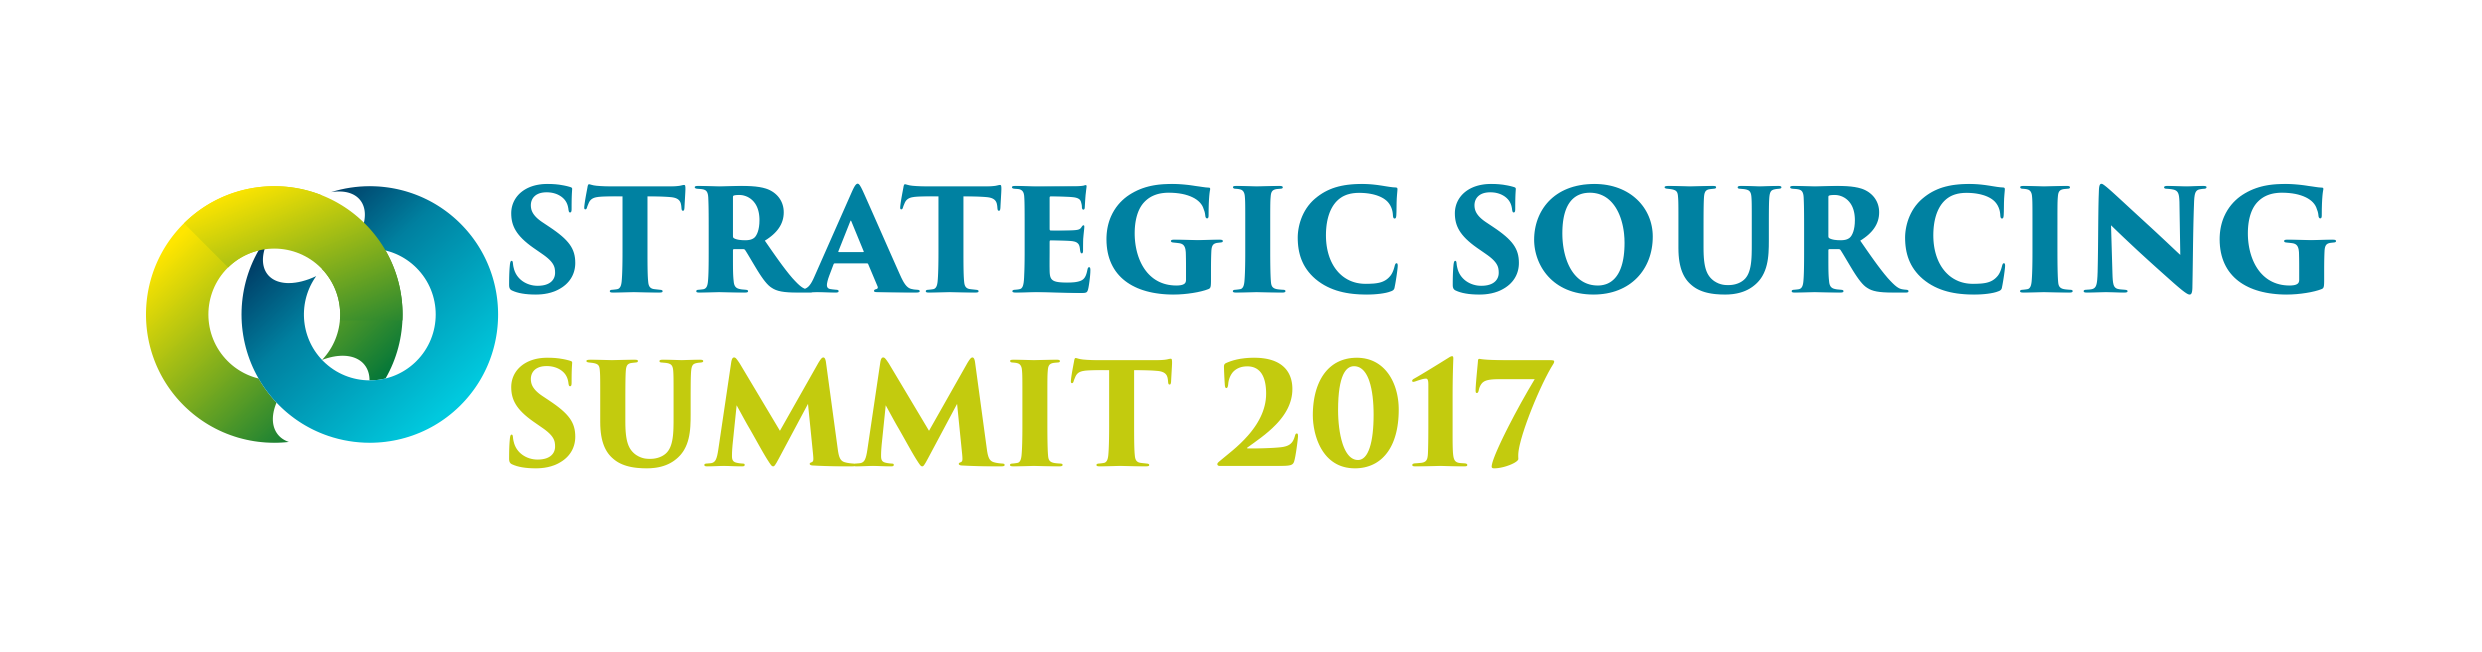 Strategic Sourcing Summit 2017